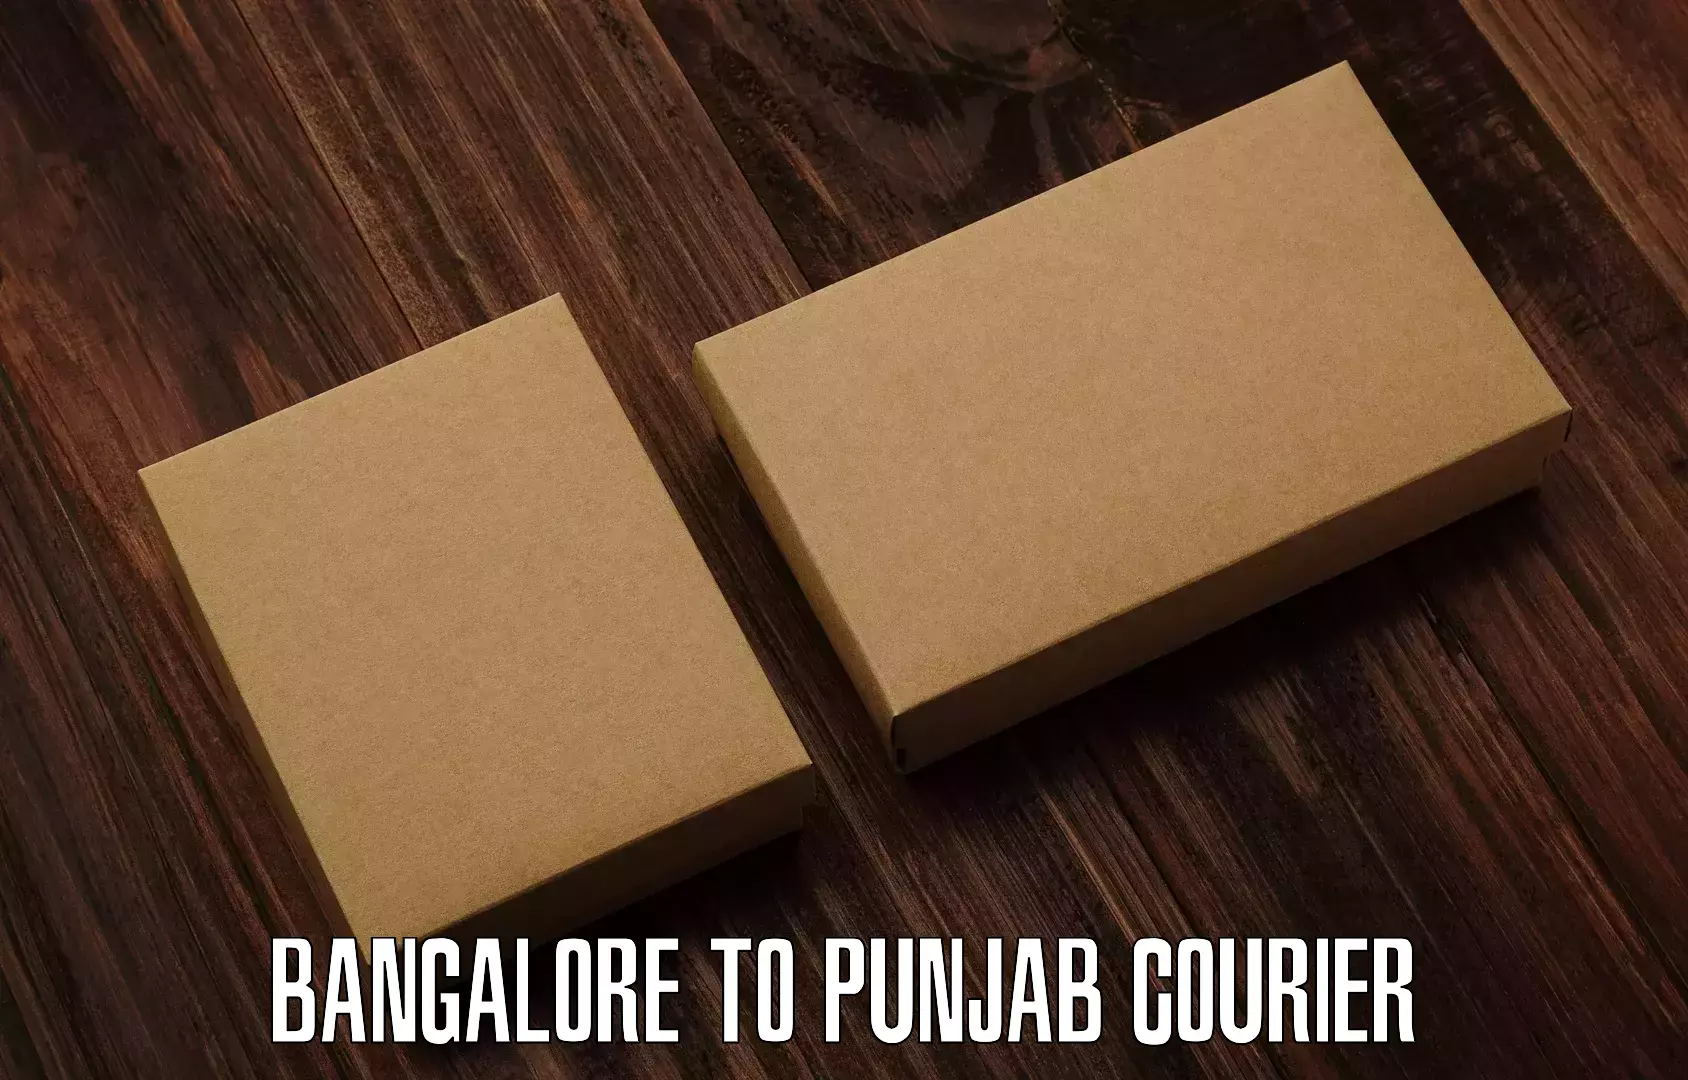 Same day shipping Bangalore to Punjab